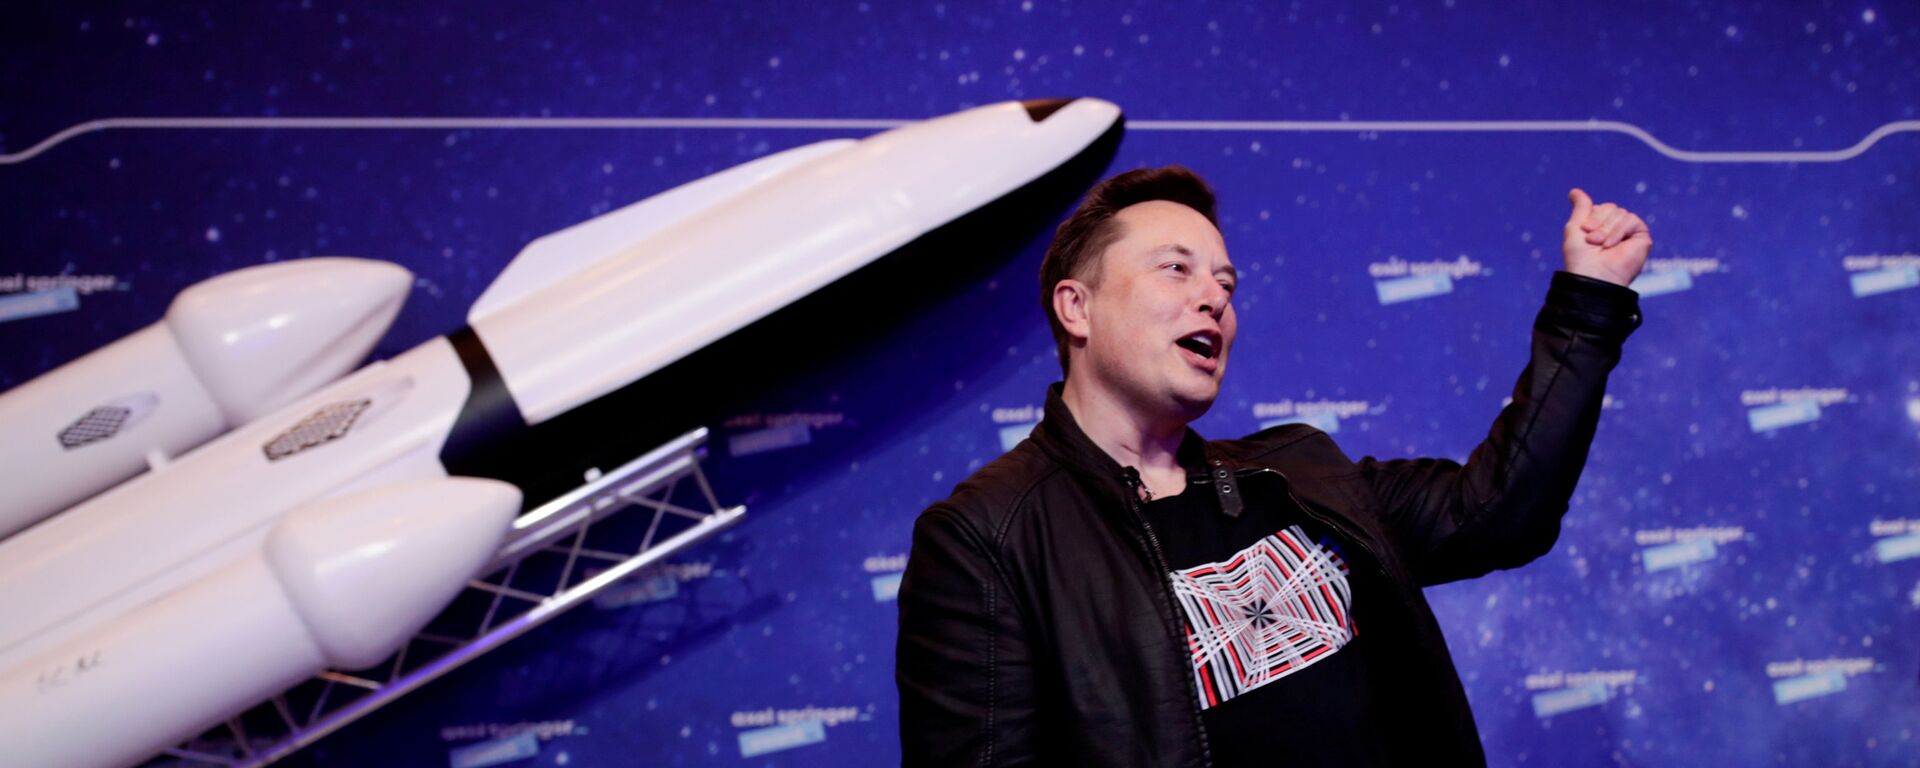 Elon Musk, director ejecutivo de SpaceX, en la alfombra roja de los premios Axel Springer - Sputnik Mundo, 1920, 08.02.2021